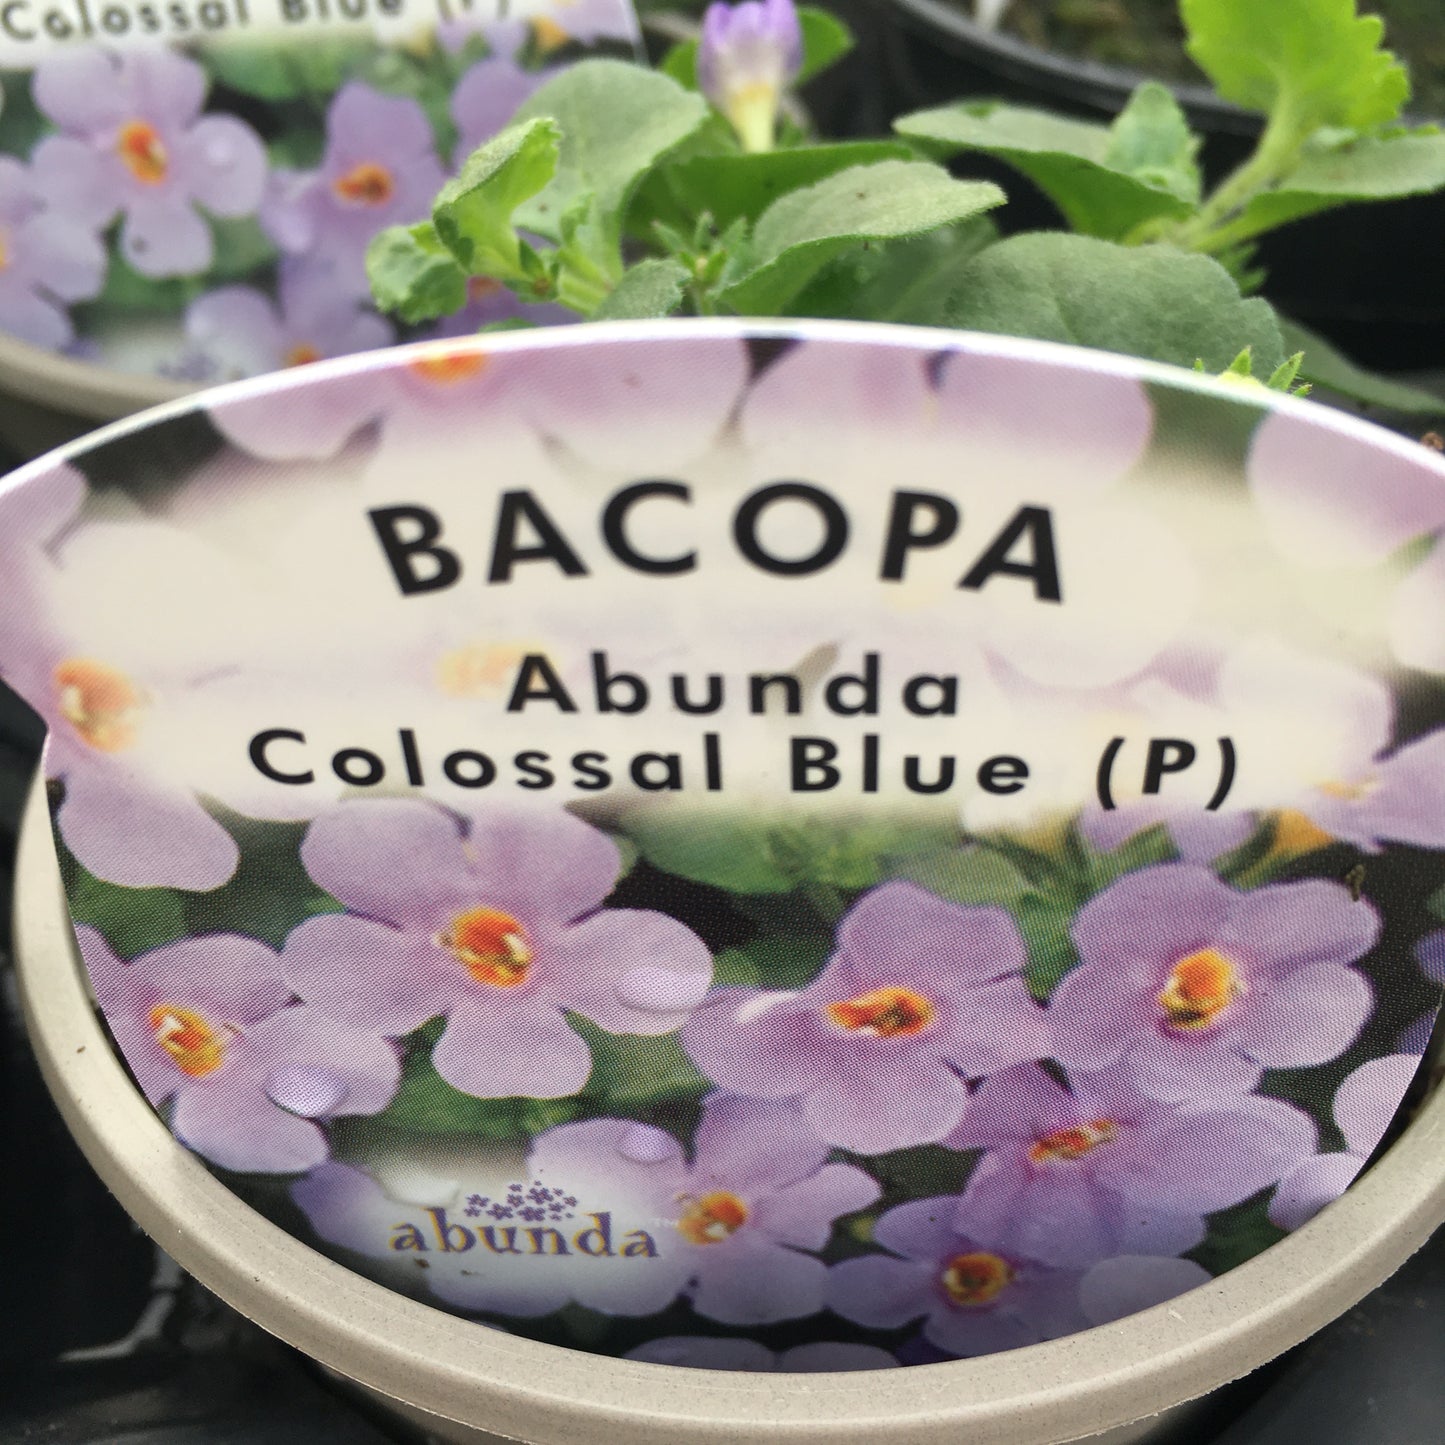 Bedding plants 9cm Diascia Verbena Bacopa Bidens Surfinias etc